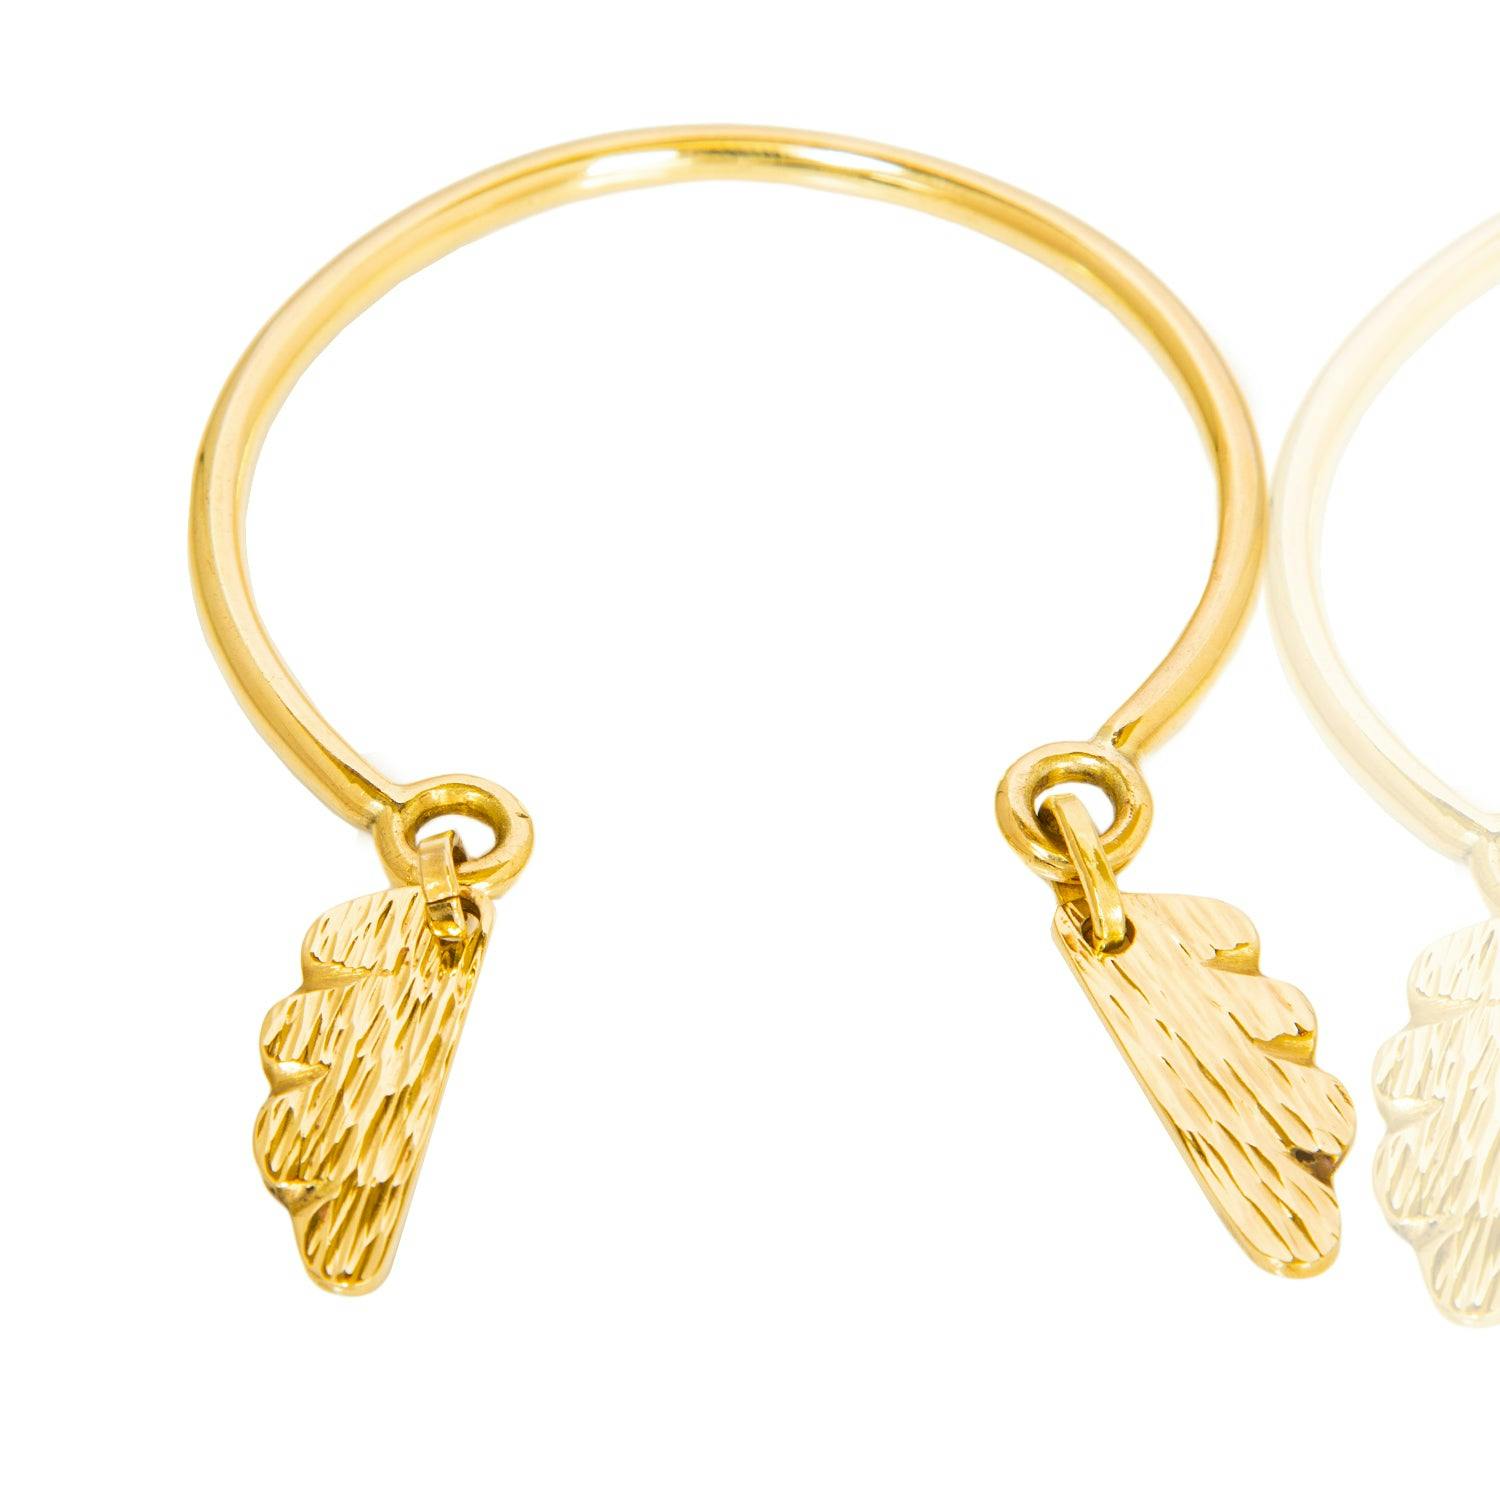 Malaika Wings Bracelet, a product by Adele Dejak